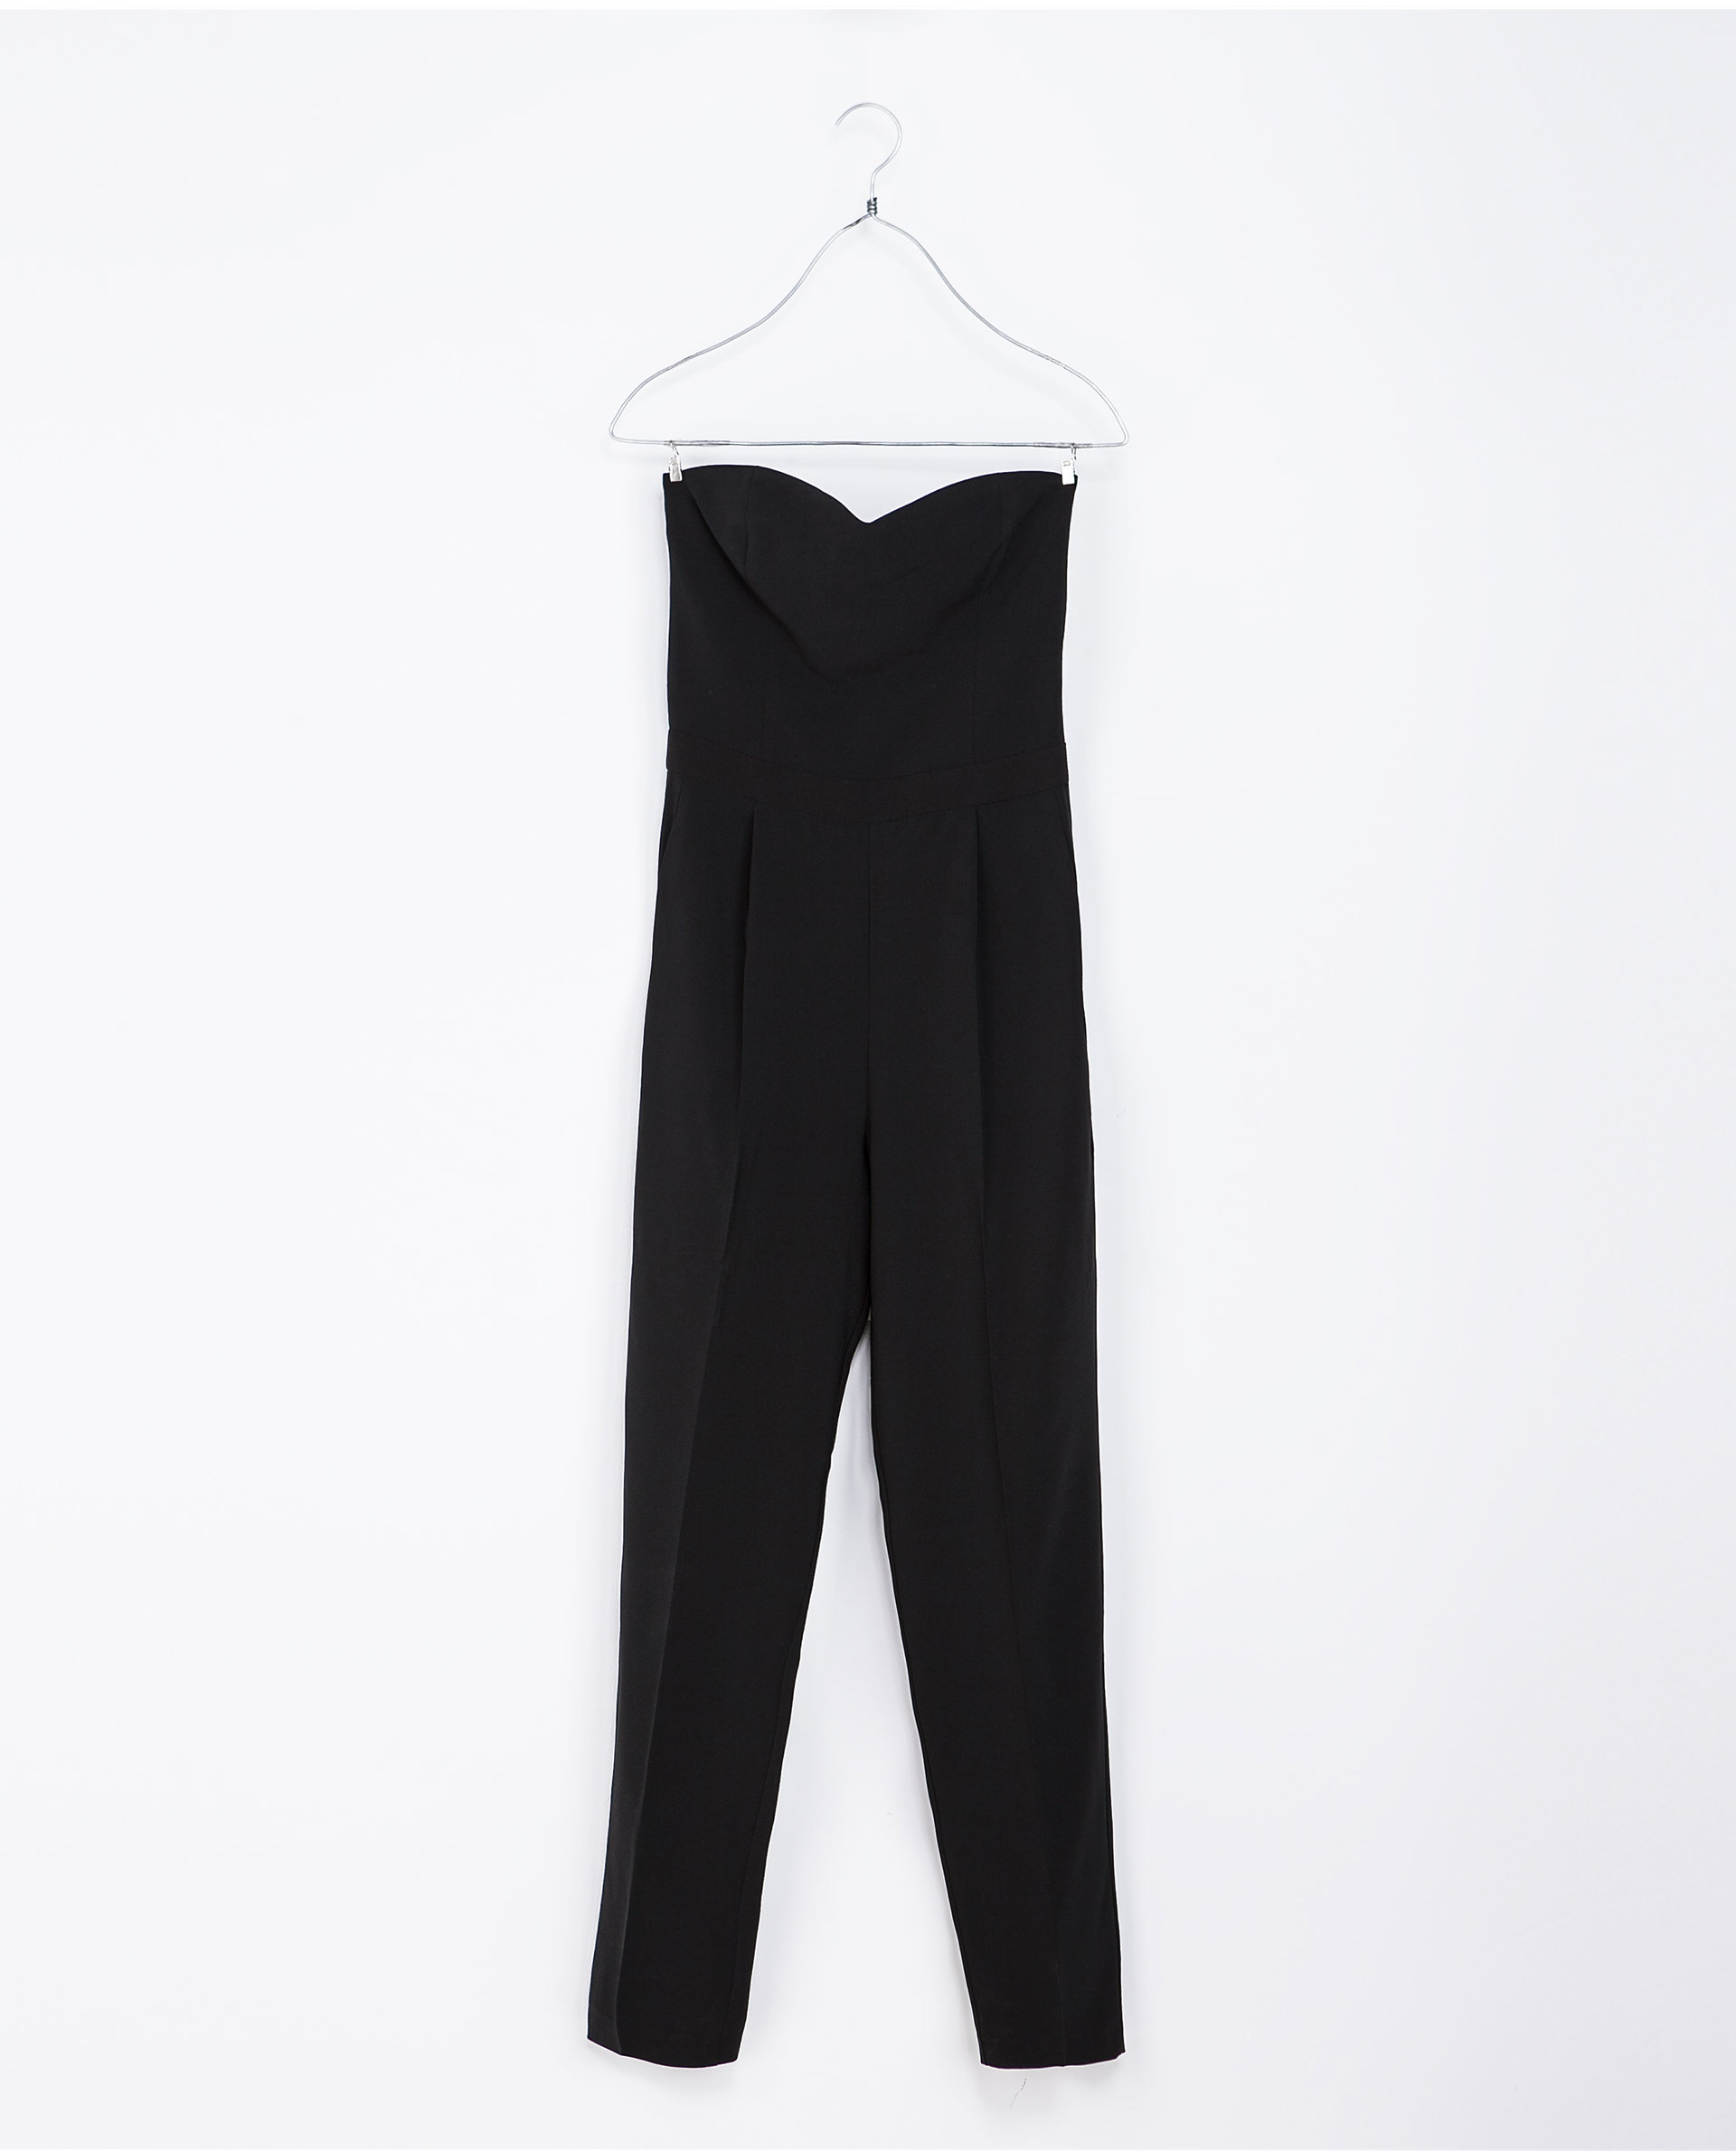 Zara Long Jumpsuit with Heart Neckline in Black | Lyst